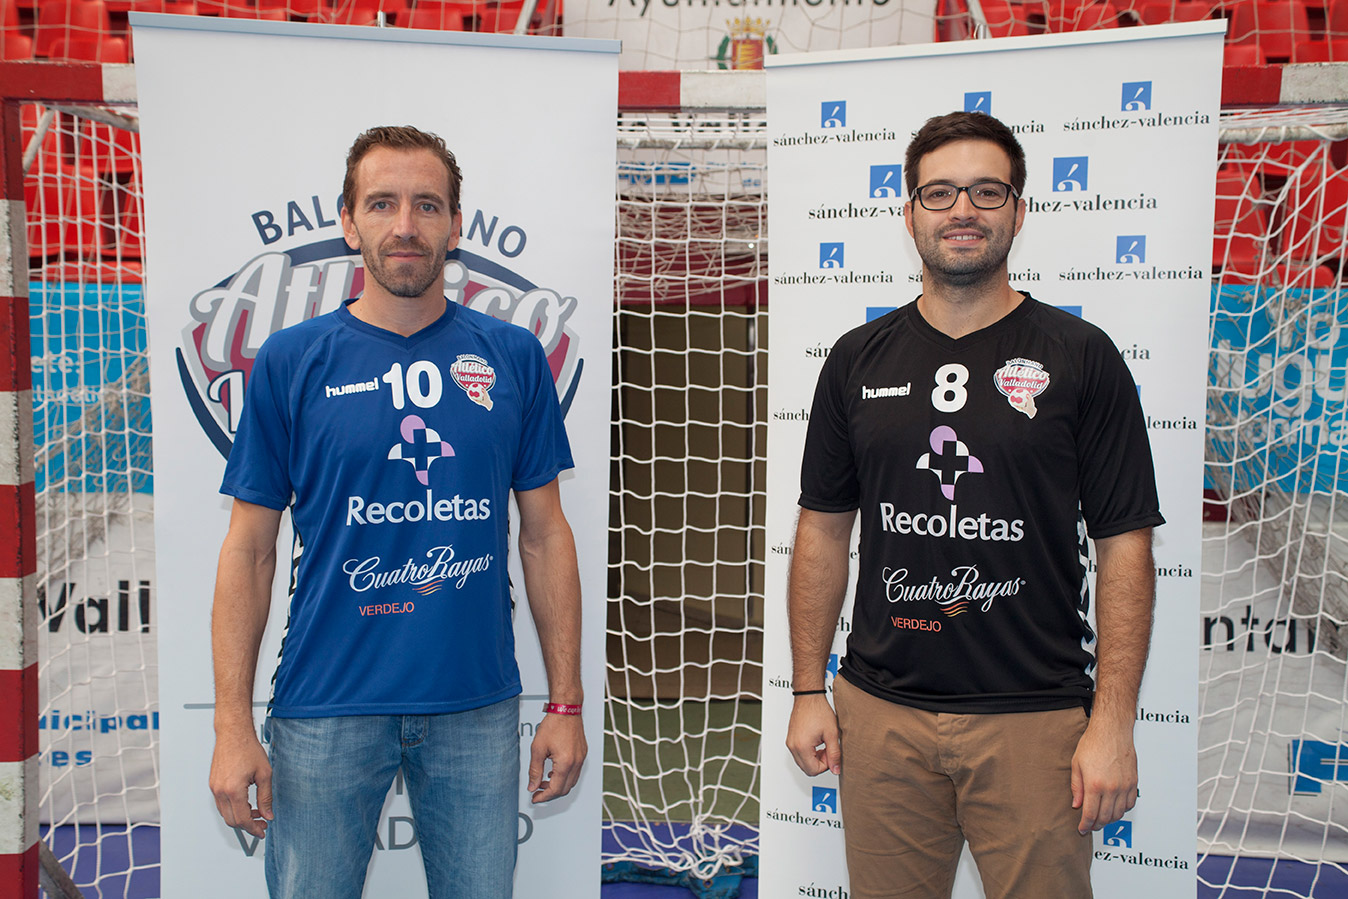 El Atlético Valladolid presenta su nueva equipación y patrocinadores para la temporada 2015-2016